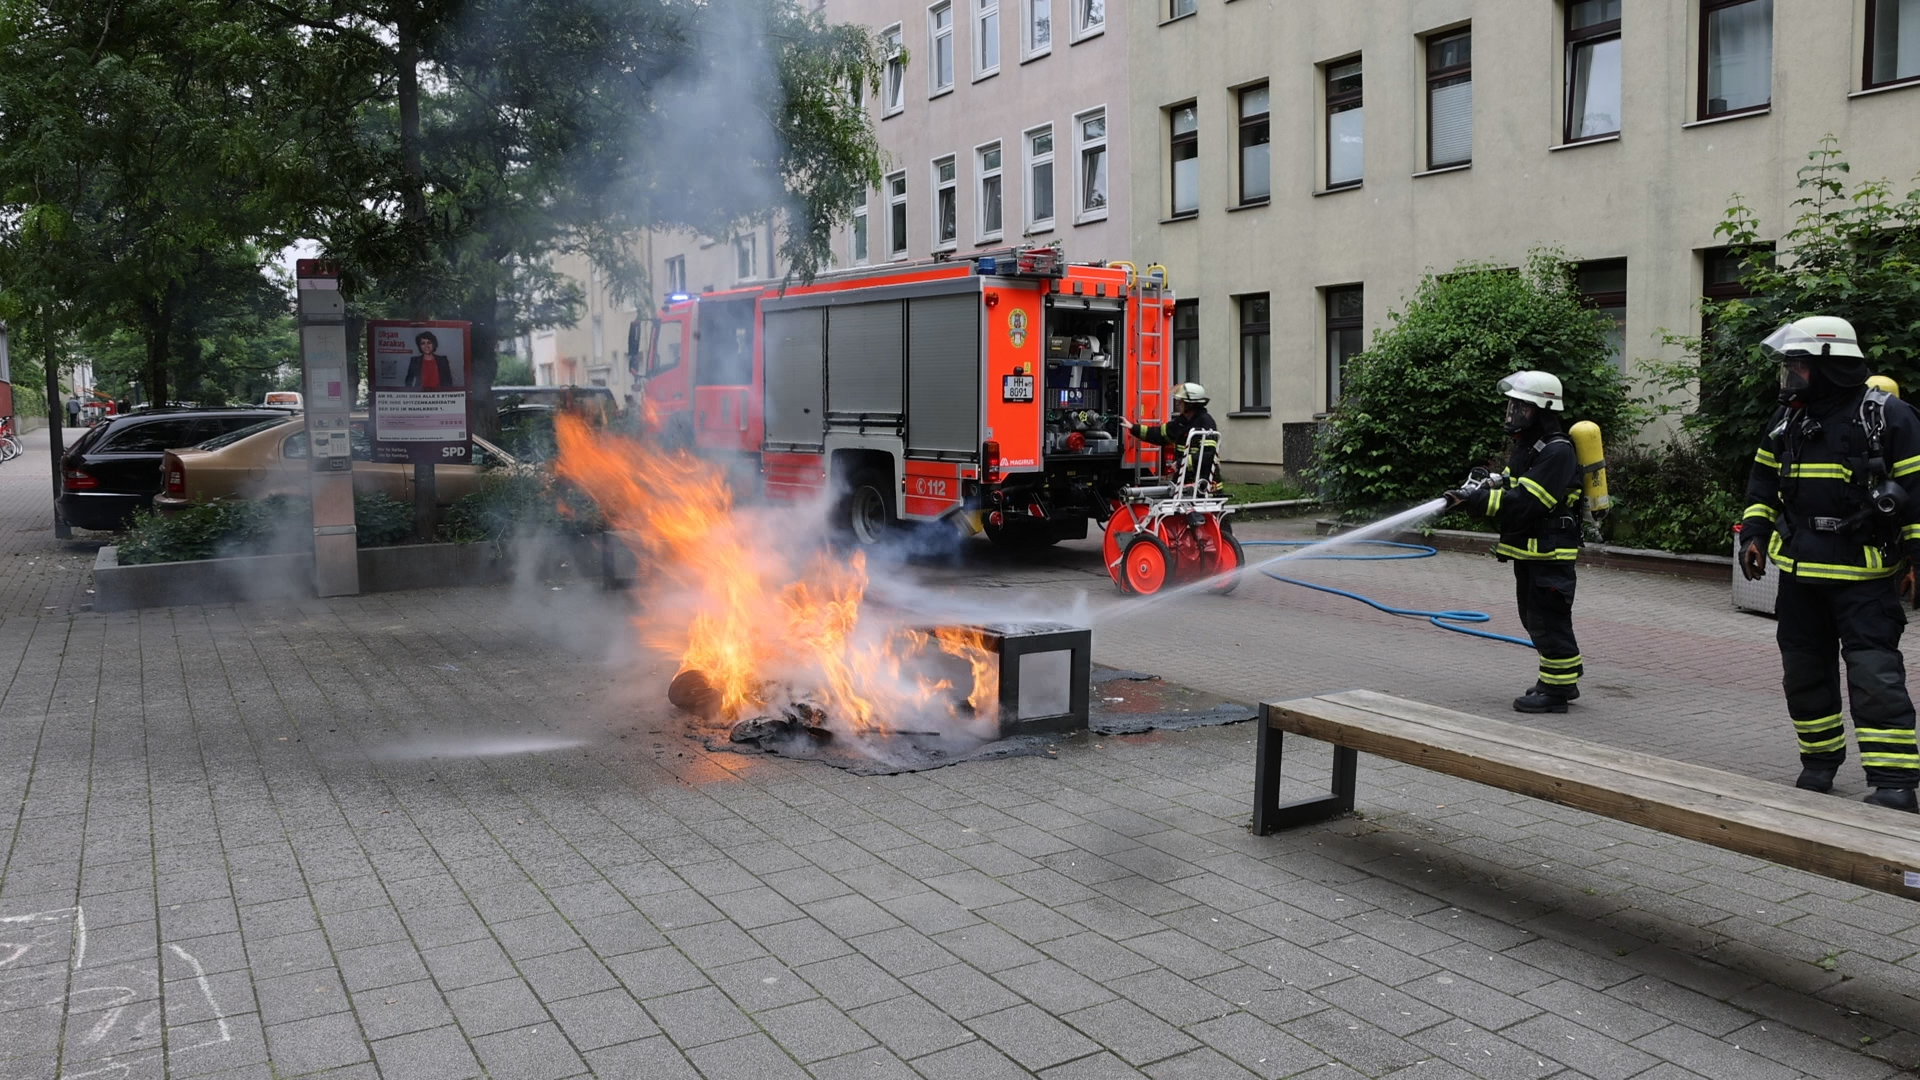 Feuer in Schule in Harburg – Hausmeister zieht brennenden Müllcotaier ins Freie und verhindert so Schhlimmeres